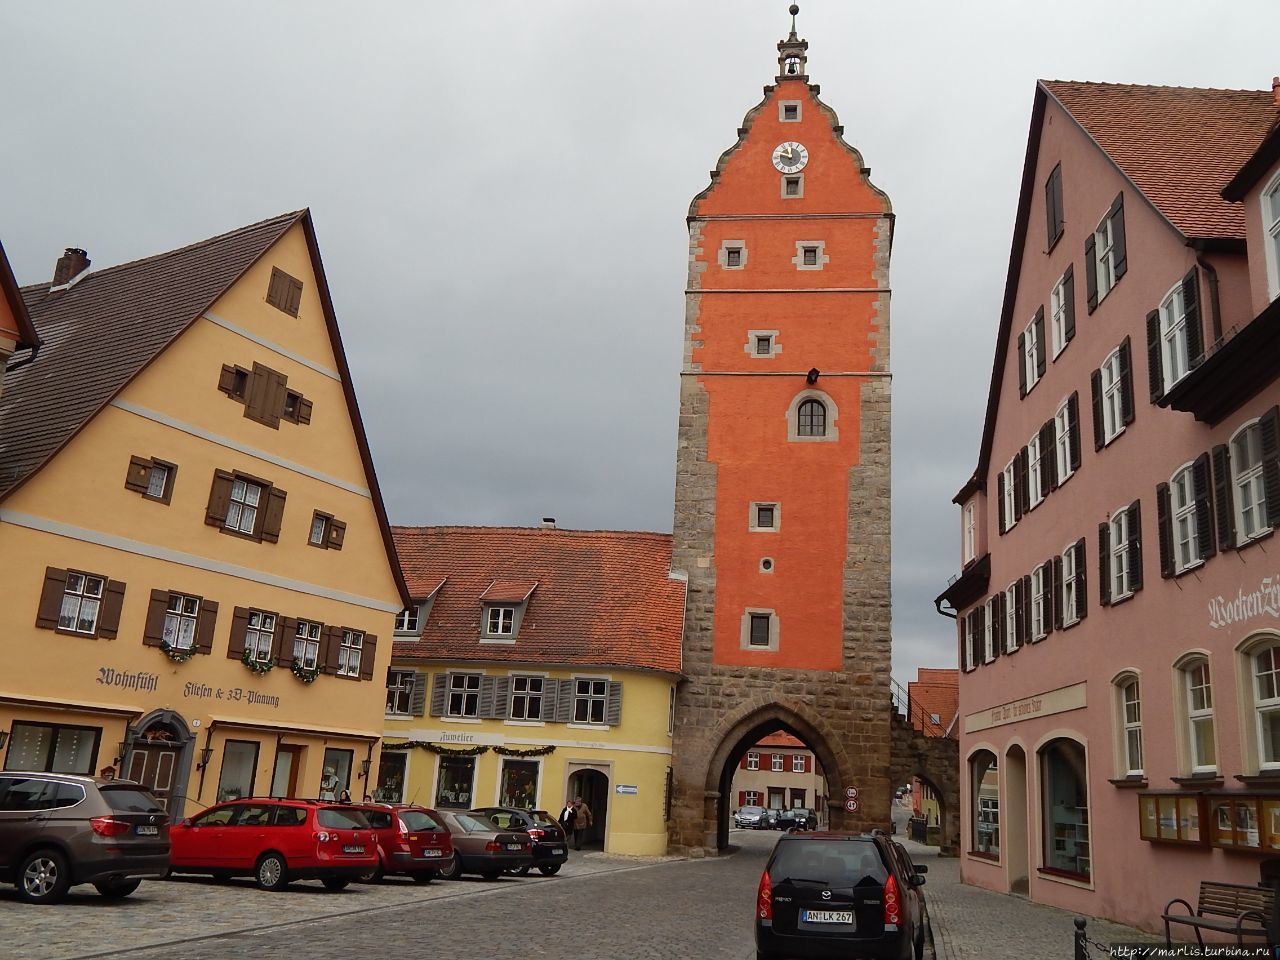 Вёрницкие ворота, 14 век, колокола -16 век. Динкельсбюль, Германия